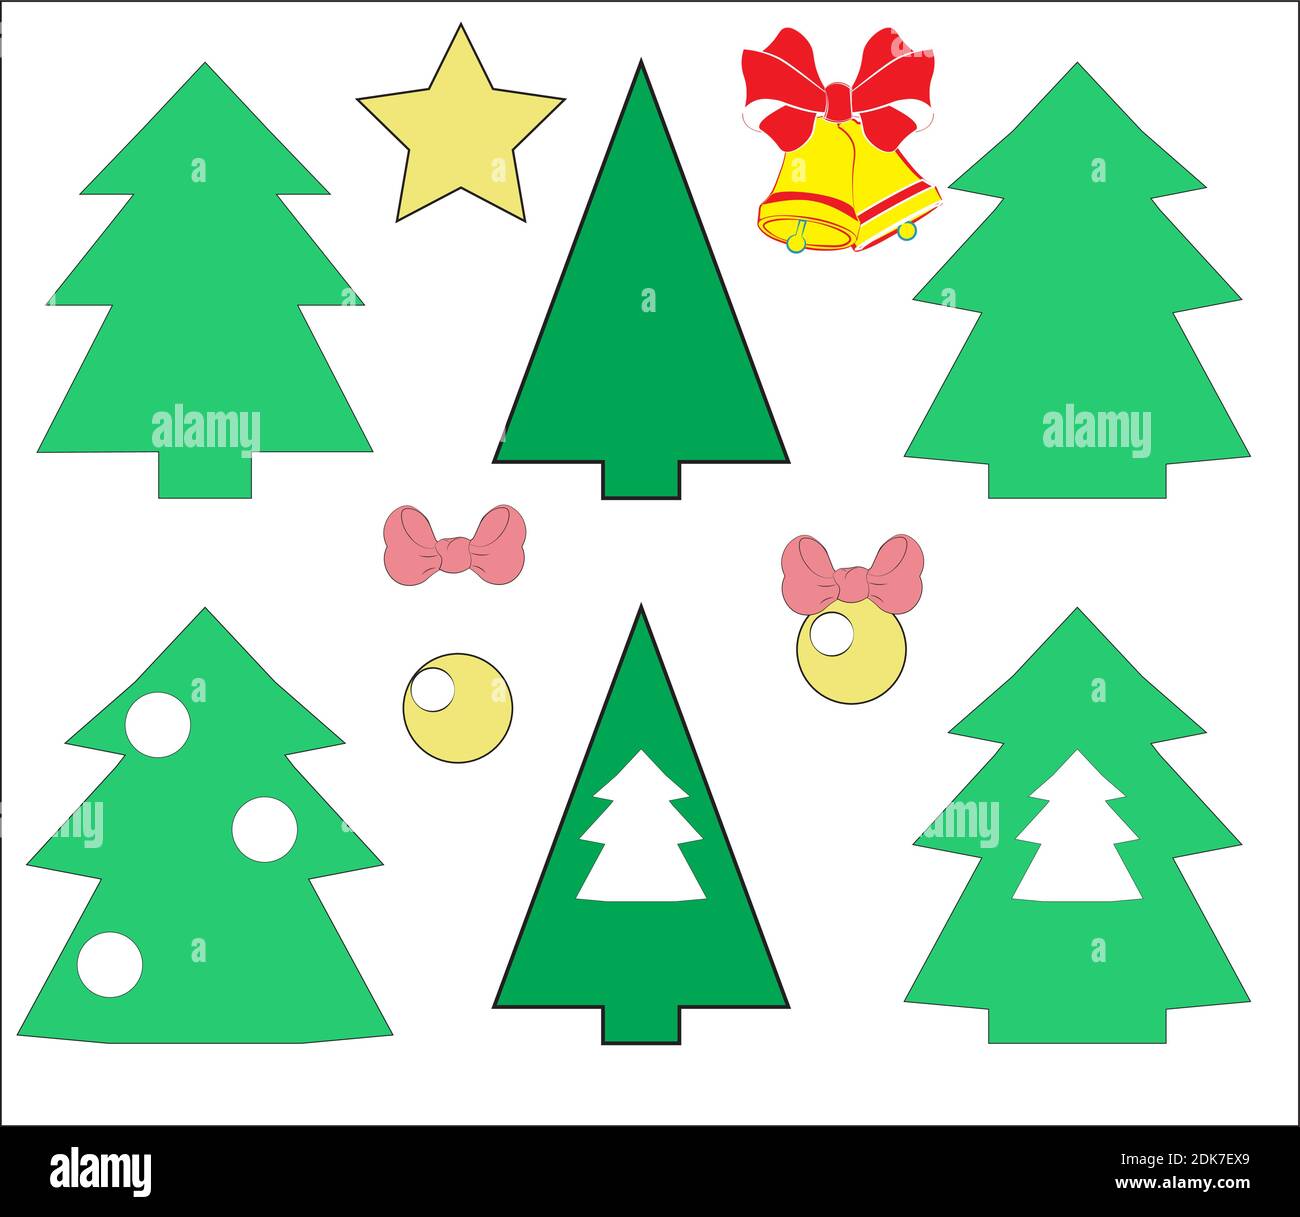 Stencil vettoriale, modelli di alberi di Natale, decorazioni e giocattoli, palle, archi, campane, per torte, appliques, adesivi, biglietto d'auguri fatto a mano Illustrazione Vettoriale